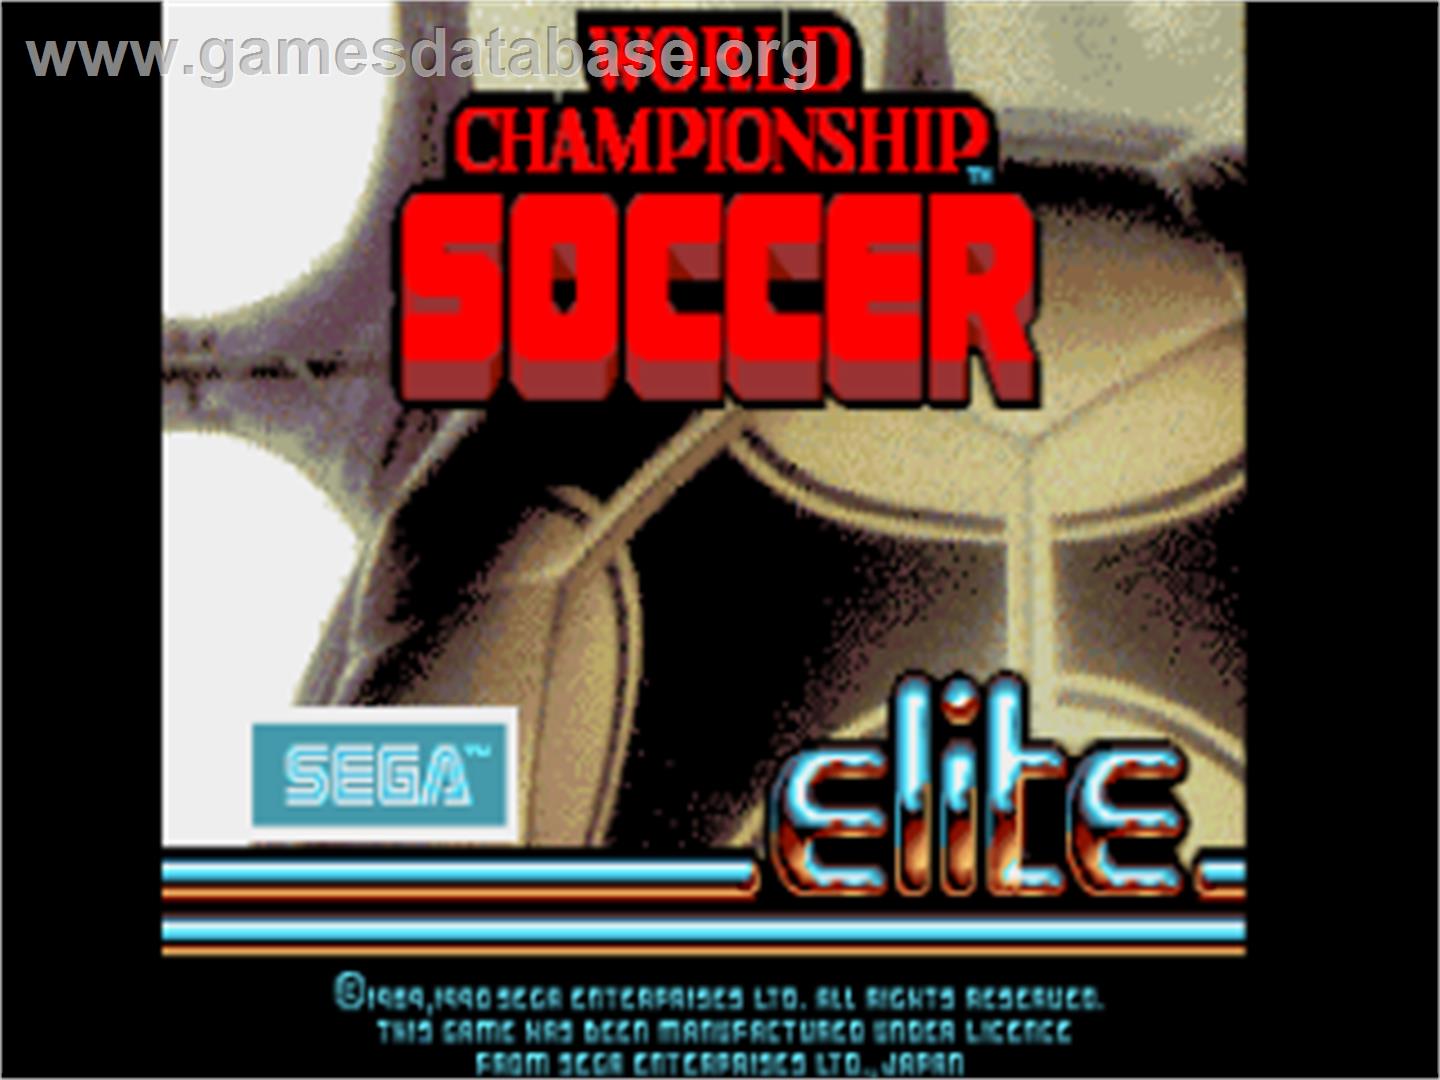 World Championship Soccer - Commodore Amiga - Artwork - Title Screen